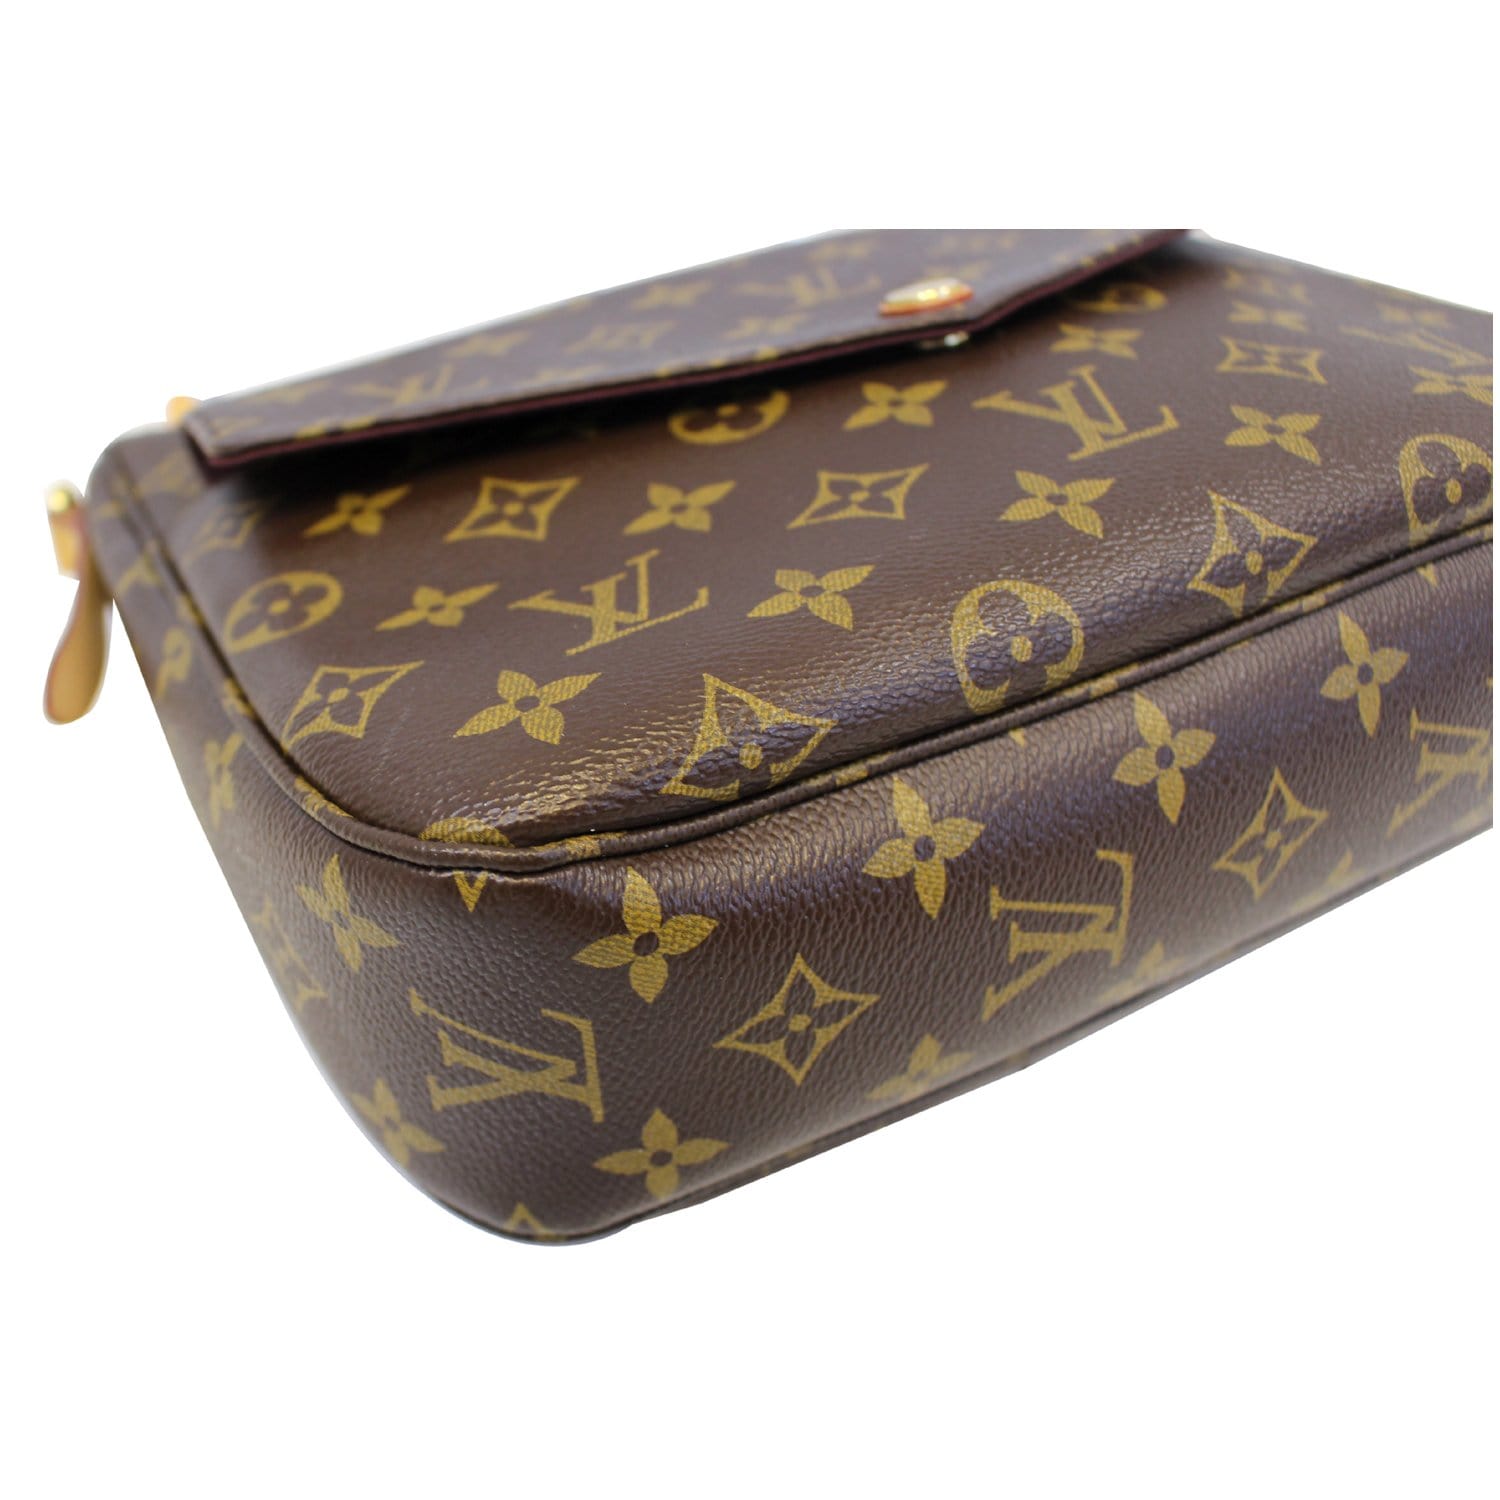 Louis Vuitton Mabillon Shoulder Bag Monogram Canvas Brown